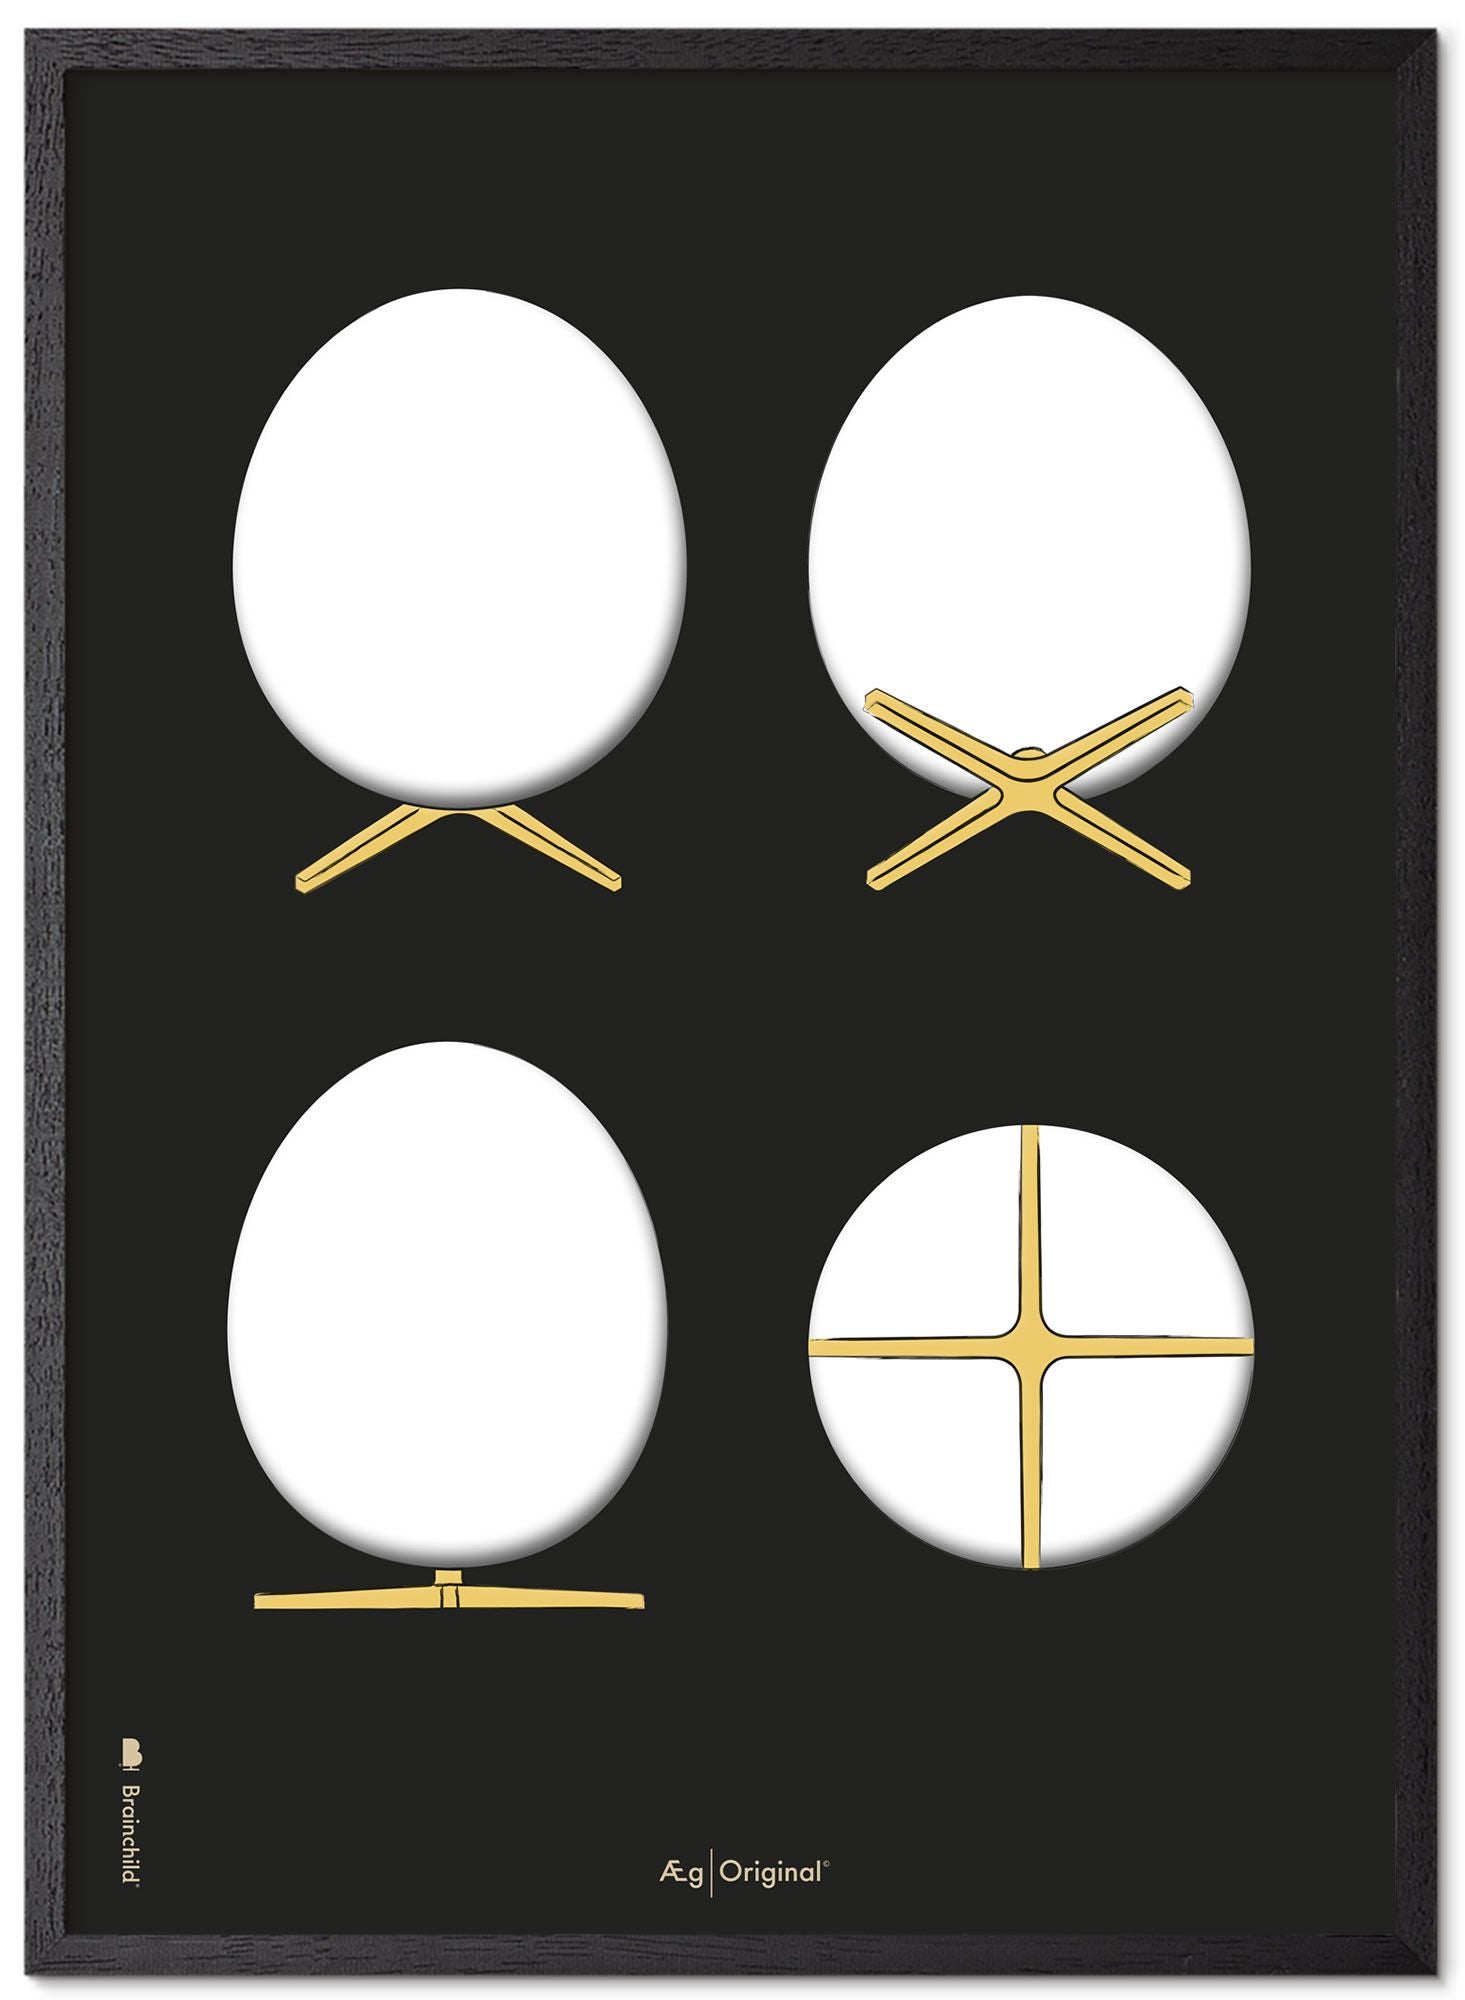 Prepare el marco de póster de bocetos de diseño de huevo hecho de madera lacada negra de 70x100 cm, fondo negro